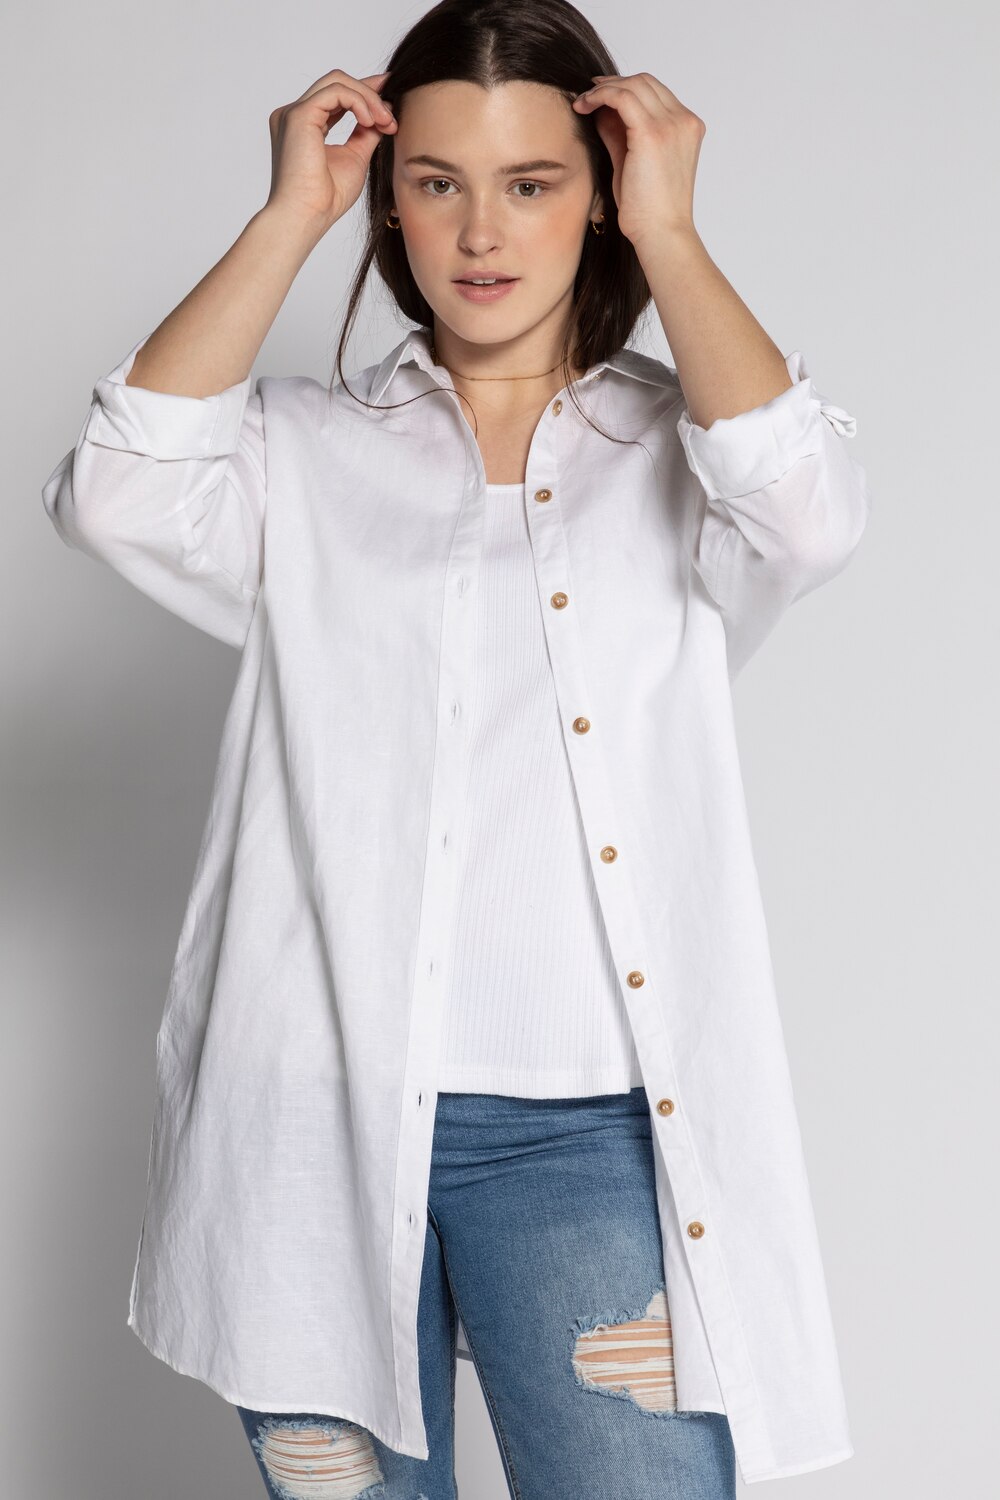 Plus Size Linen Blend Button Front Shirt, Woman, white, size: 16/18, linen/cotton, Studio Untold